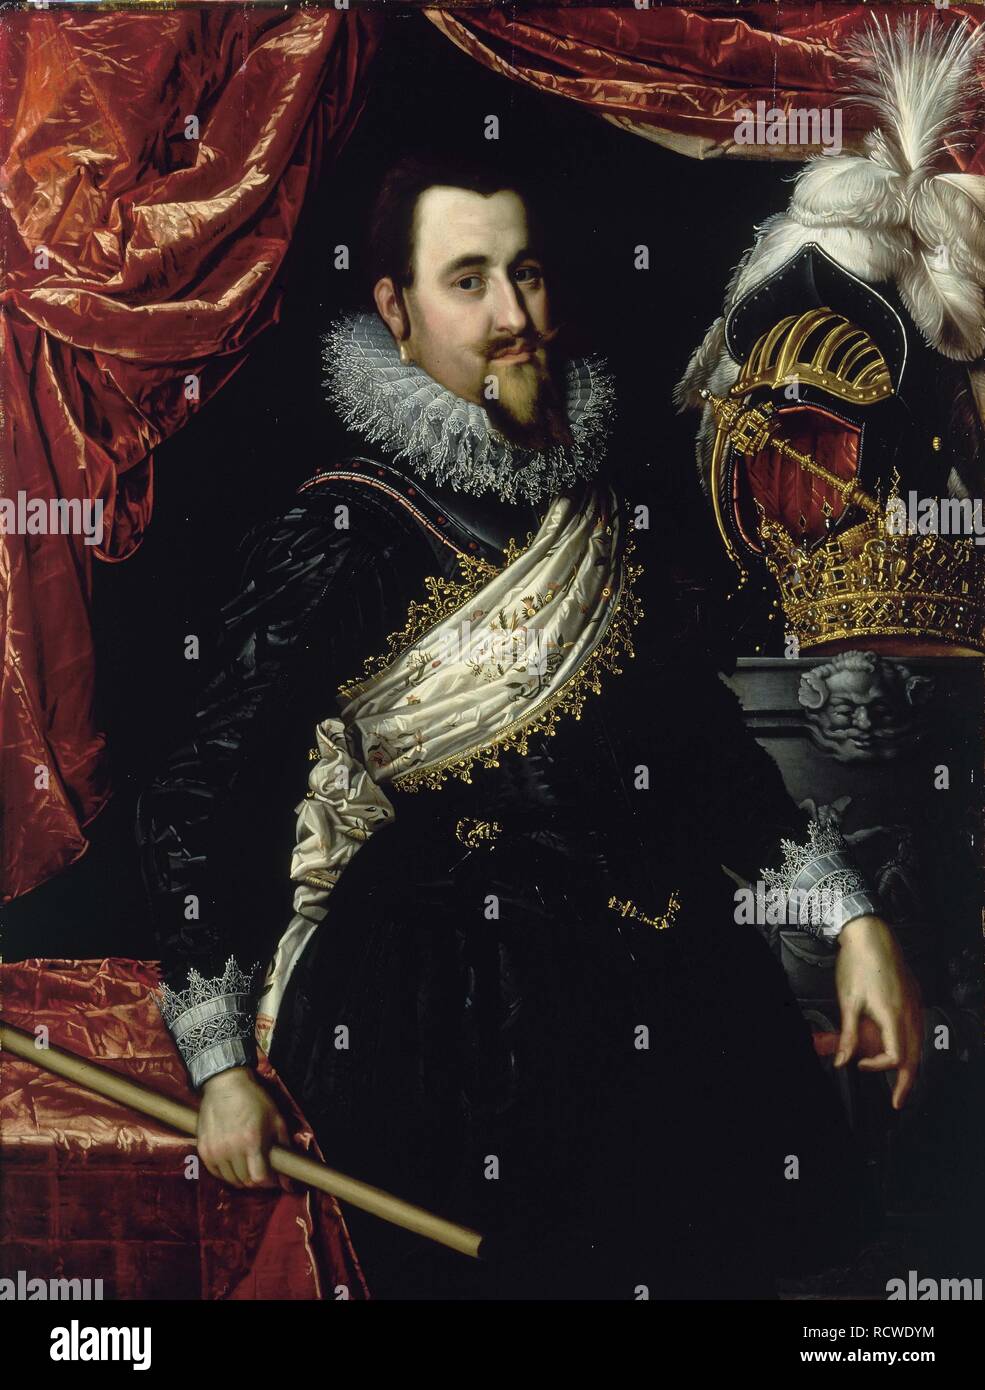 Porträt von König Christian IV. von Dänemark (1577-1648). Museum: Frederiksborg Slot. Autor: Pieter Isaacsz. Stockfoto